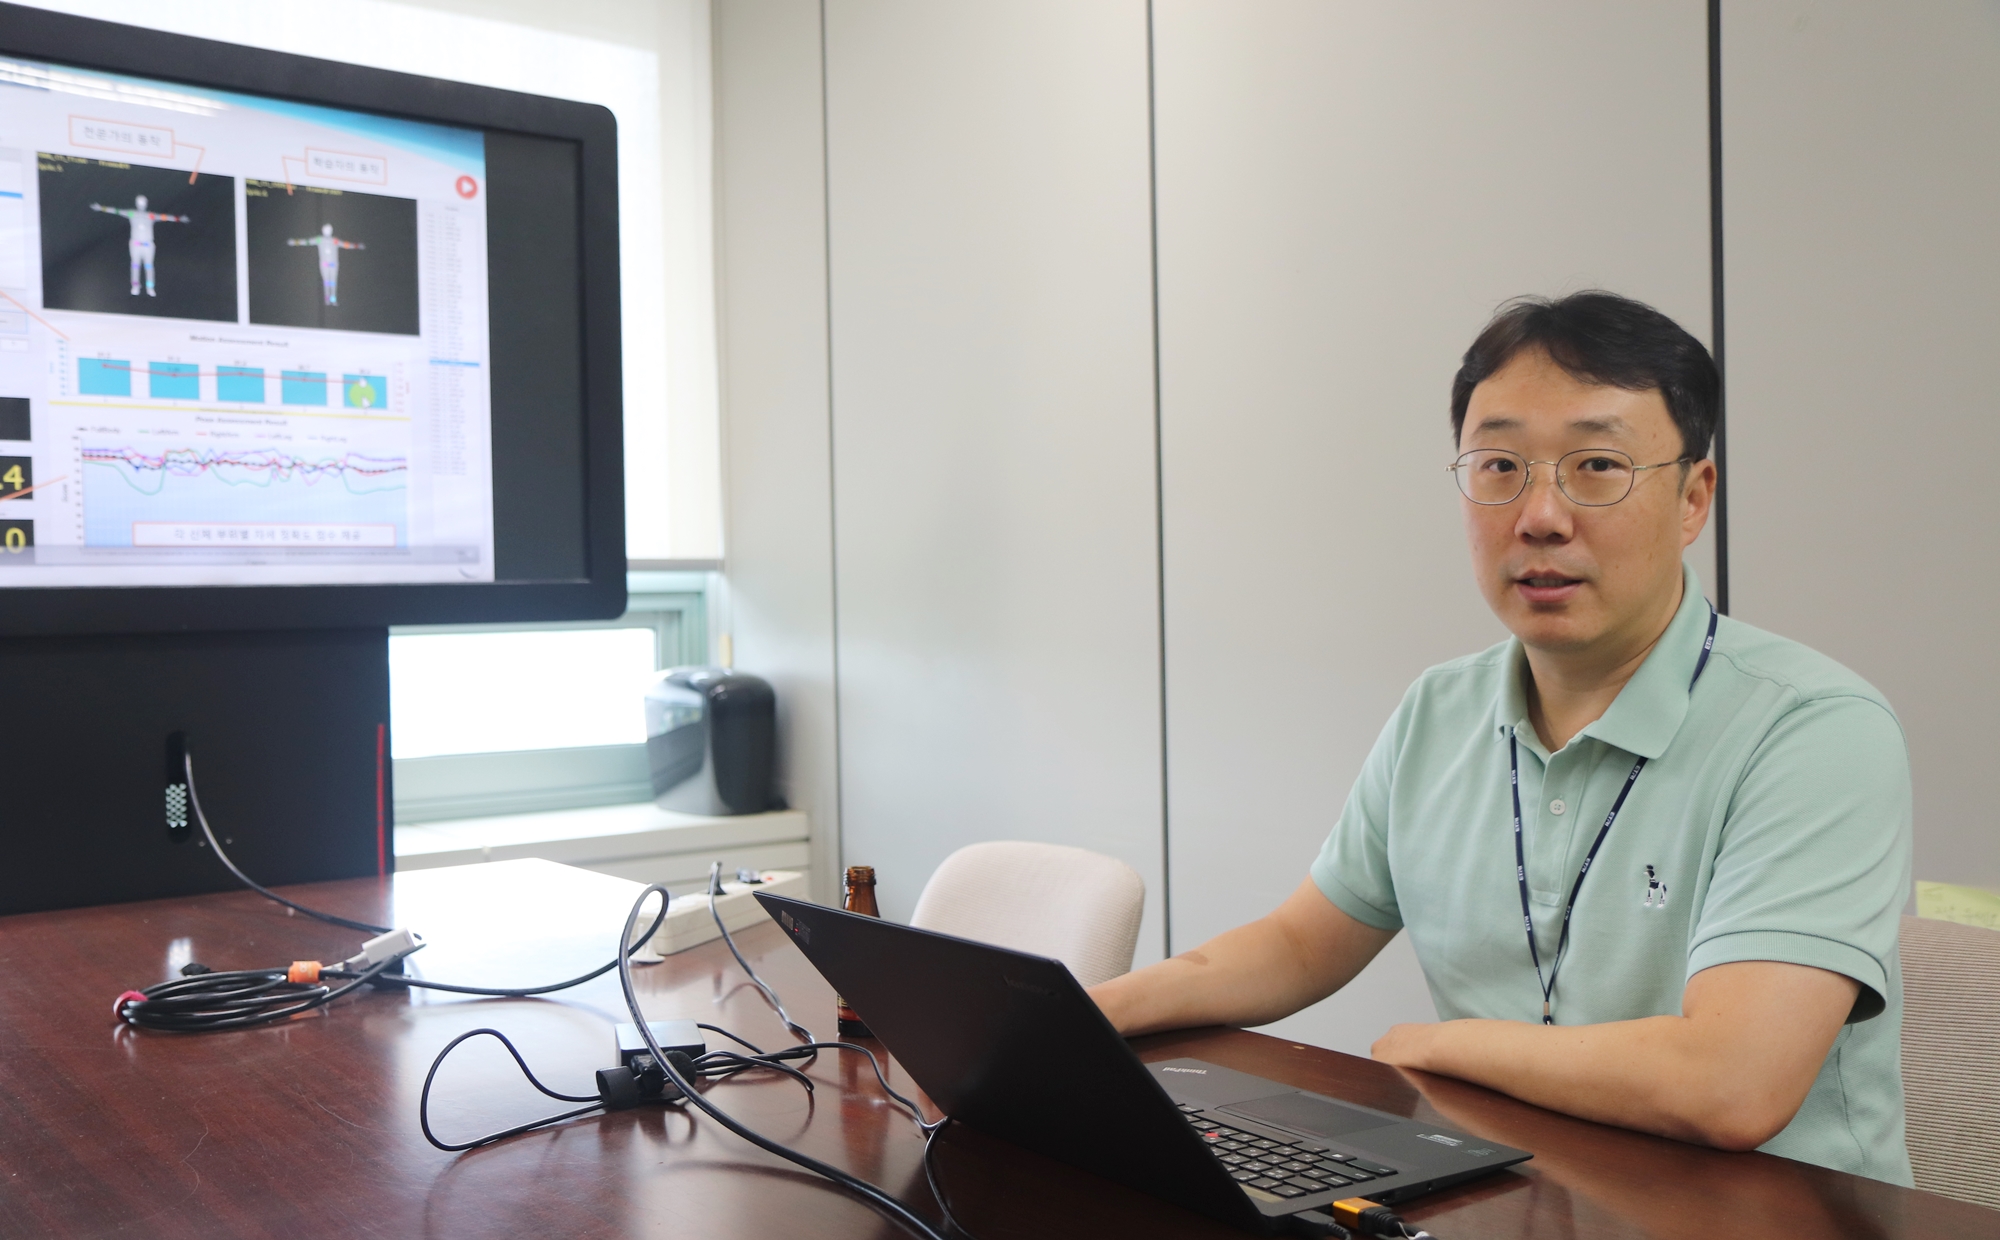 김도형 박사는 2014년부터 AI를 활용한 동작 분석 기술을 개발해왔다. 사진은 기술을 소개하고 있는 모습. <사진=김인한 기자>